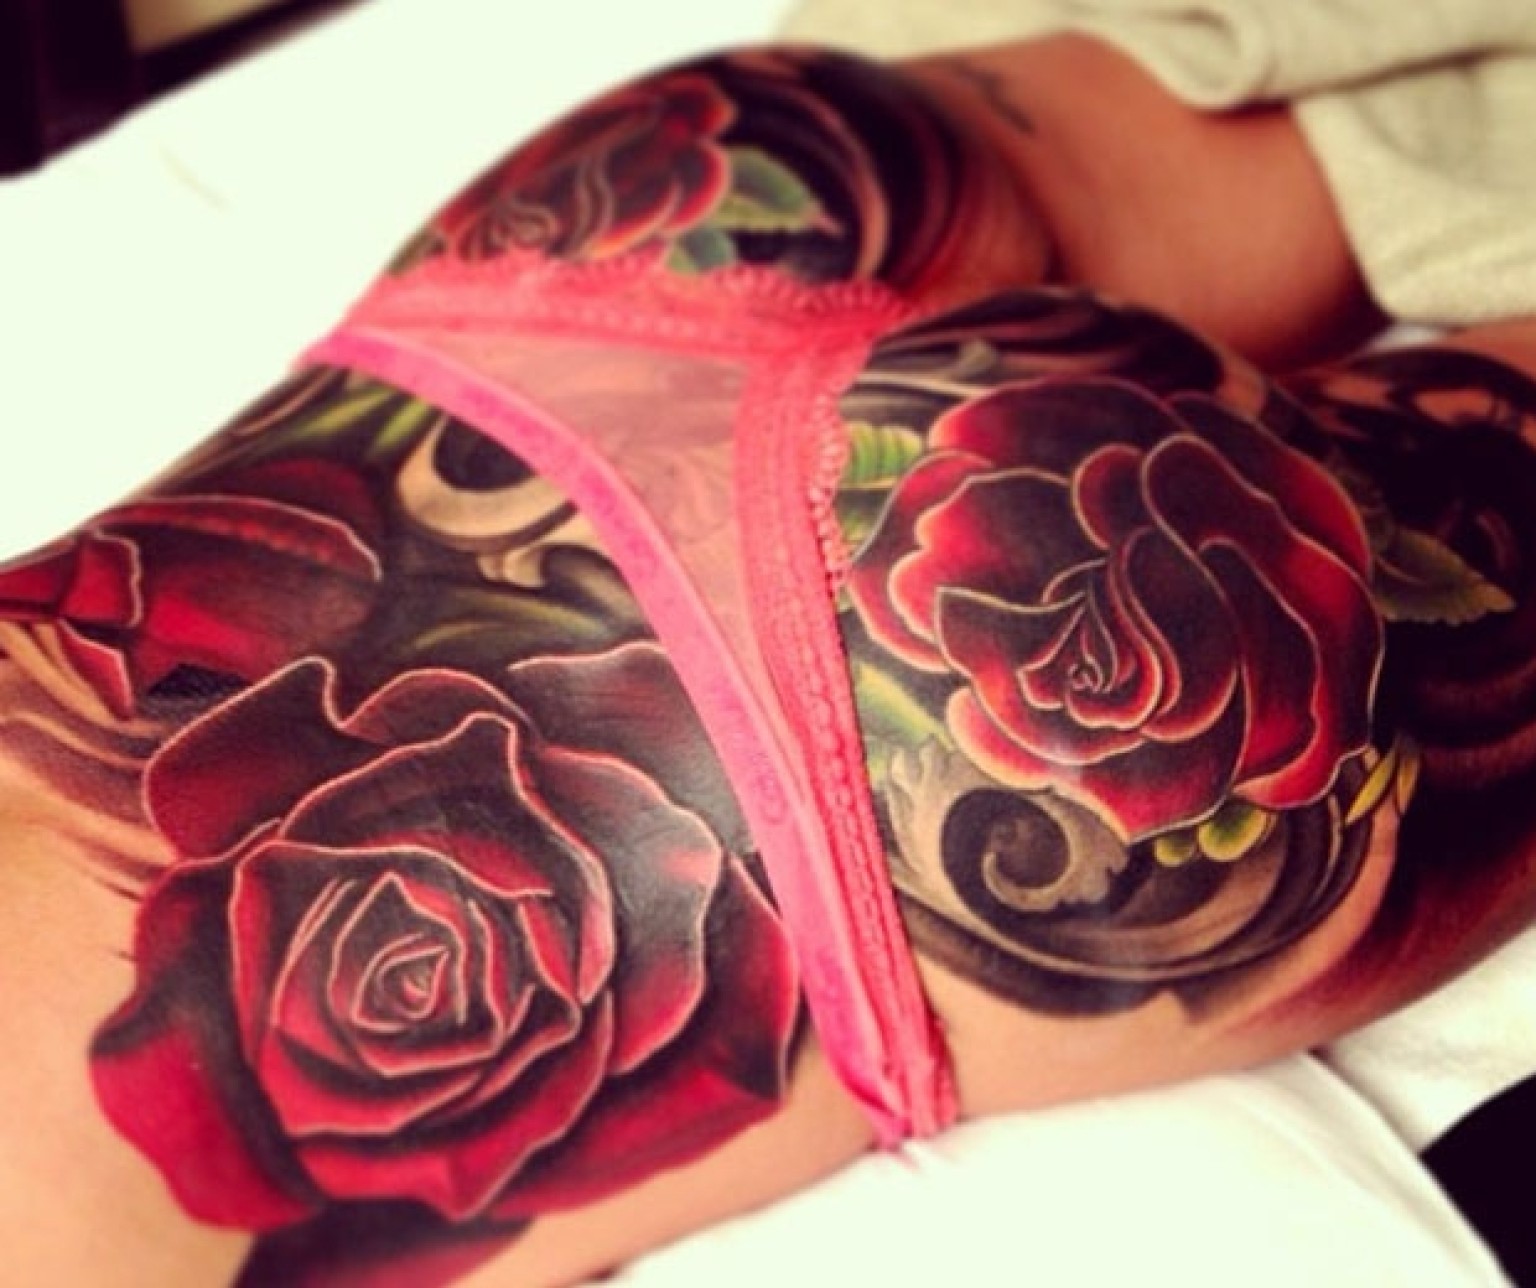 ass tattoo Cheryl cole